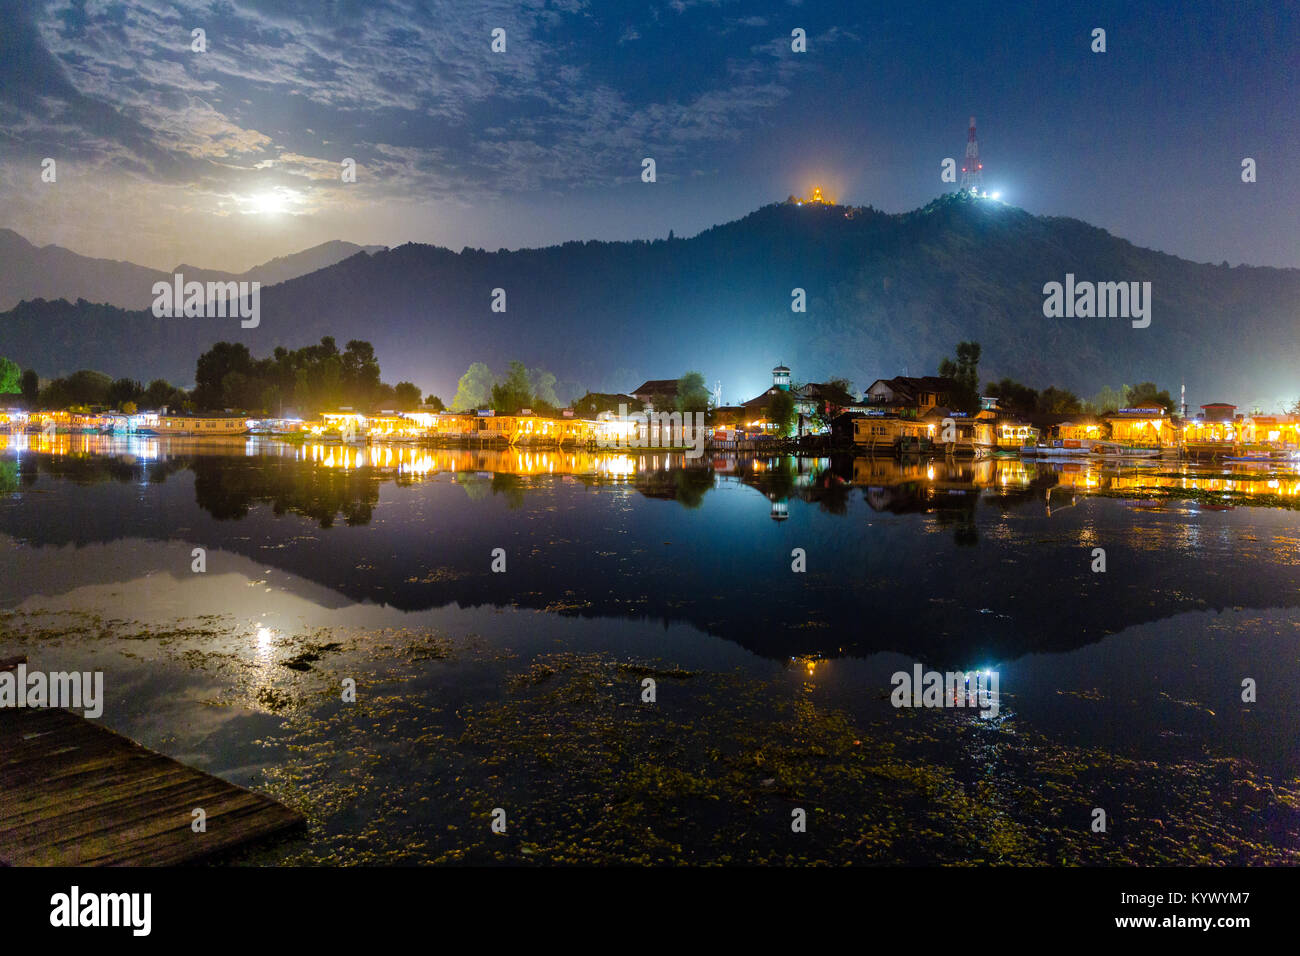 Le lac Dal (Golden Lake) à Srinagar, Inde comme vu sur une nuit de pleine lune avec bateaux maison illuminée. Shankaracharya temple vu au sommet des collines. Beauti Banque D'Images